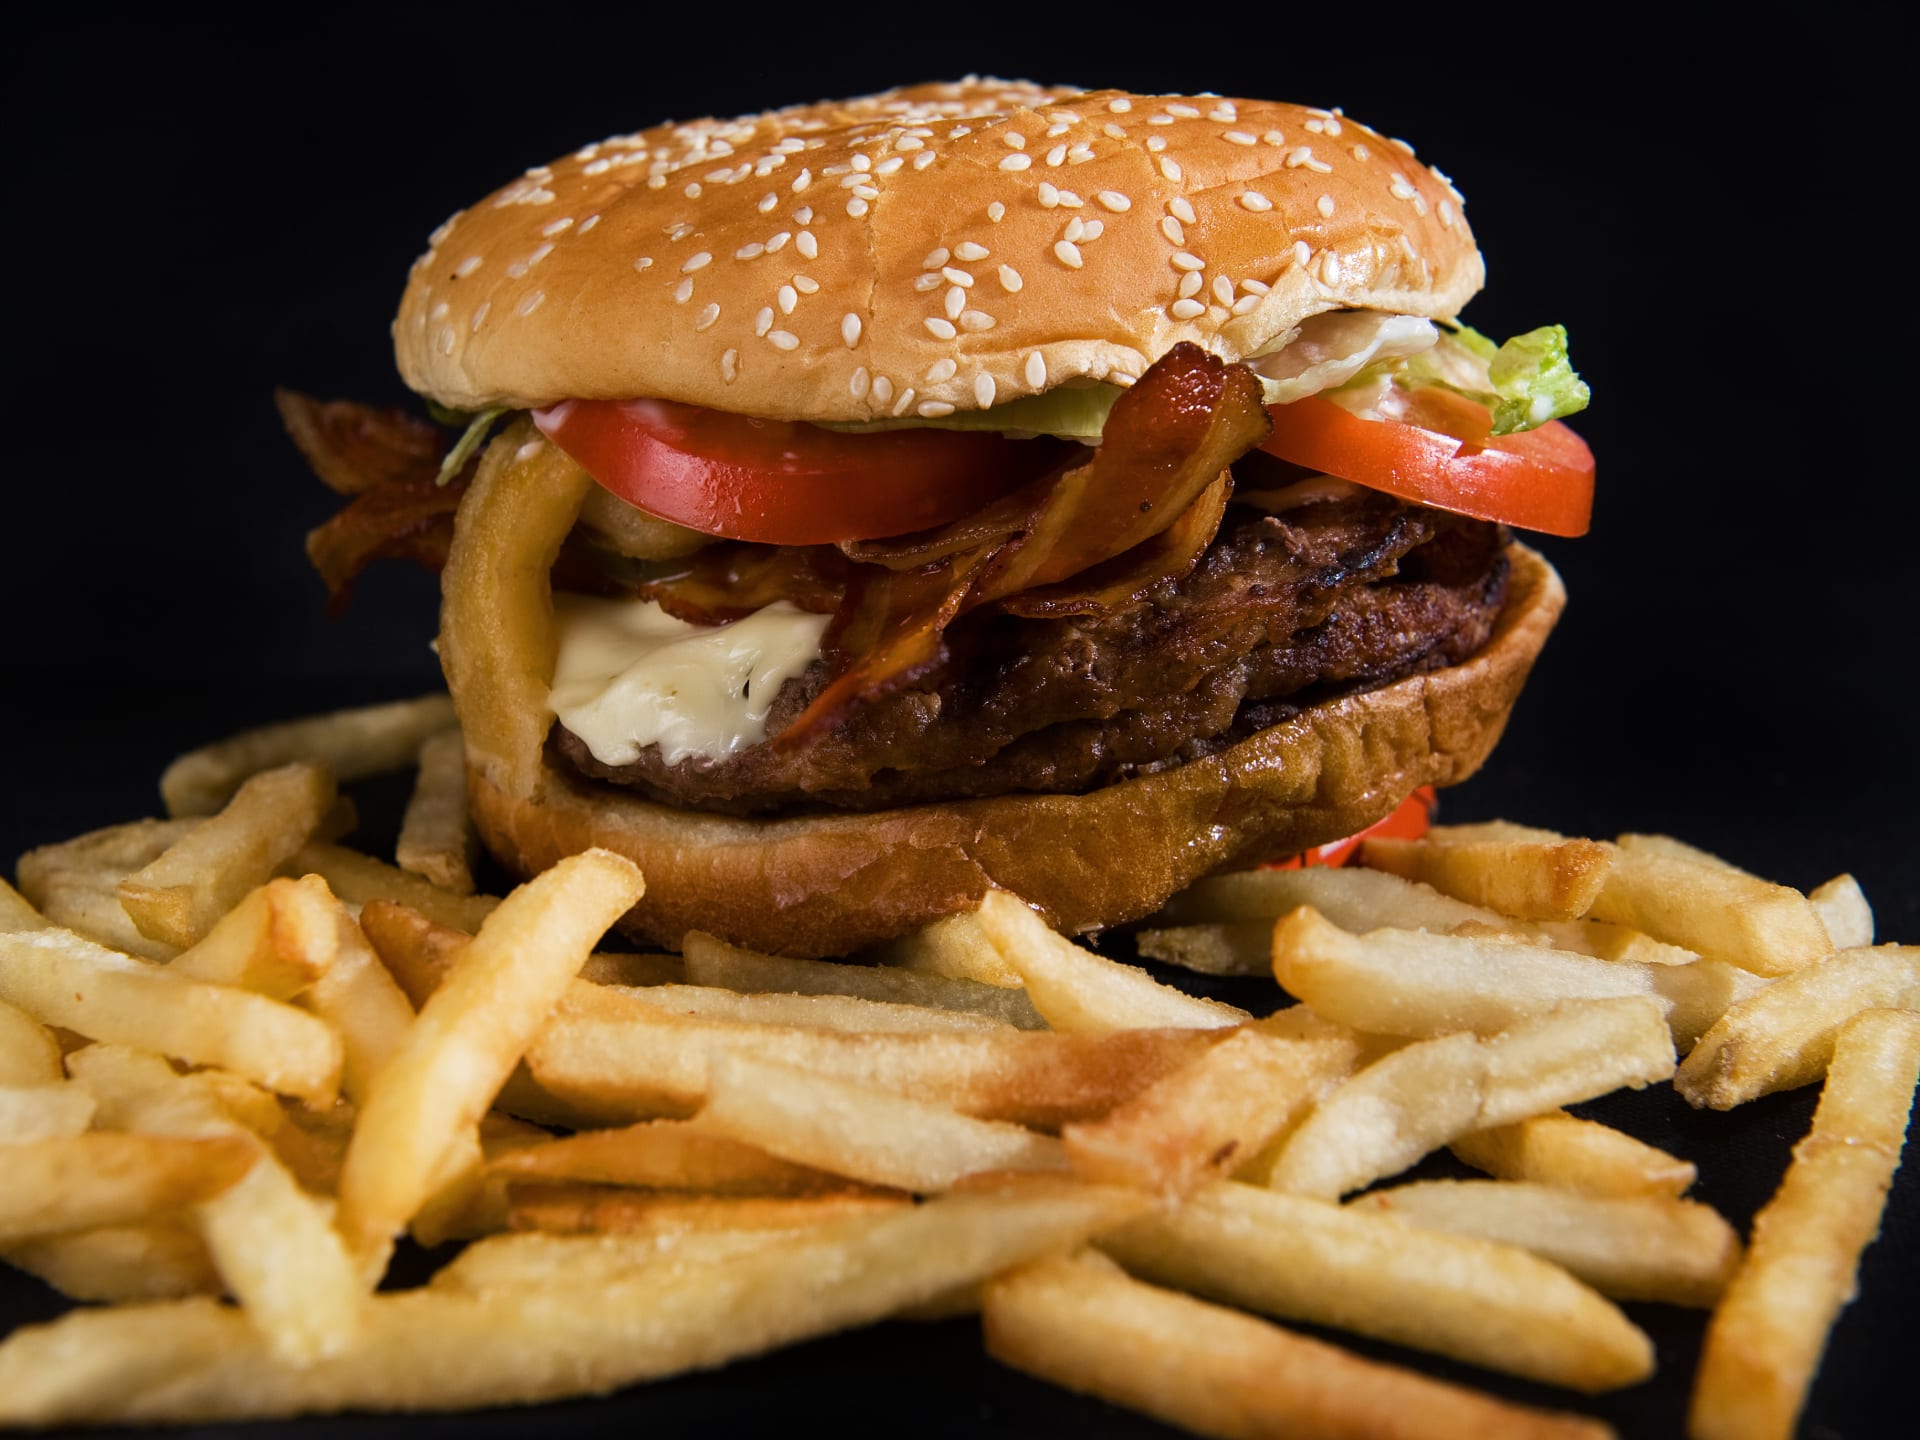 دراسة: الإفراط بتناول النشويات المكرّرة واللحوم الحمراء يتسبب بزيادة عدد الإصابات بمرض السكري "2" على مستوى العالم